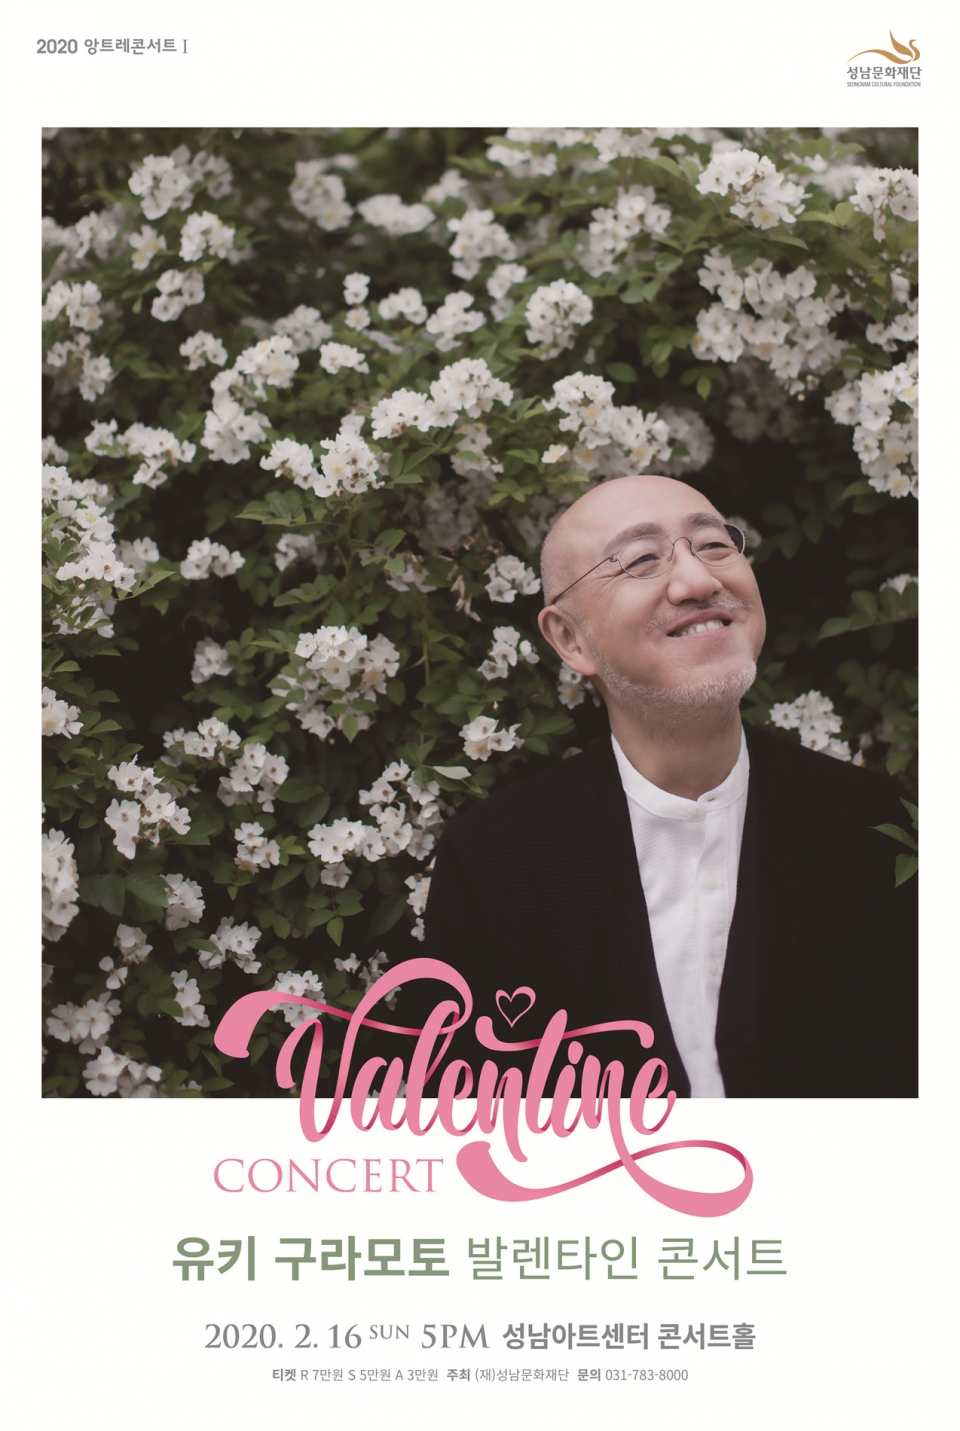 [성남문화재단] 유키 구라모토 발렌타인 콘서트 포스터